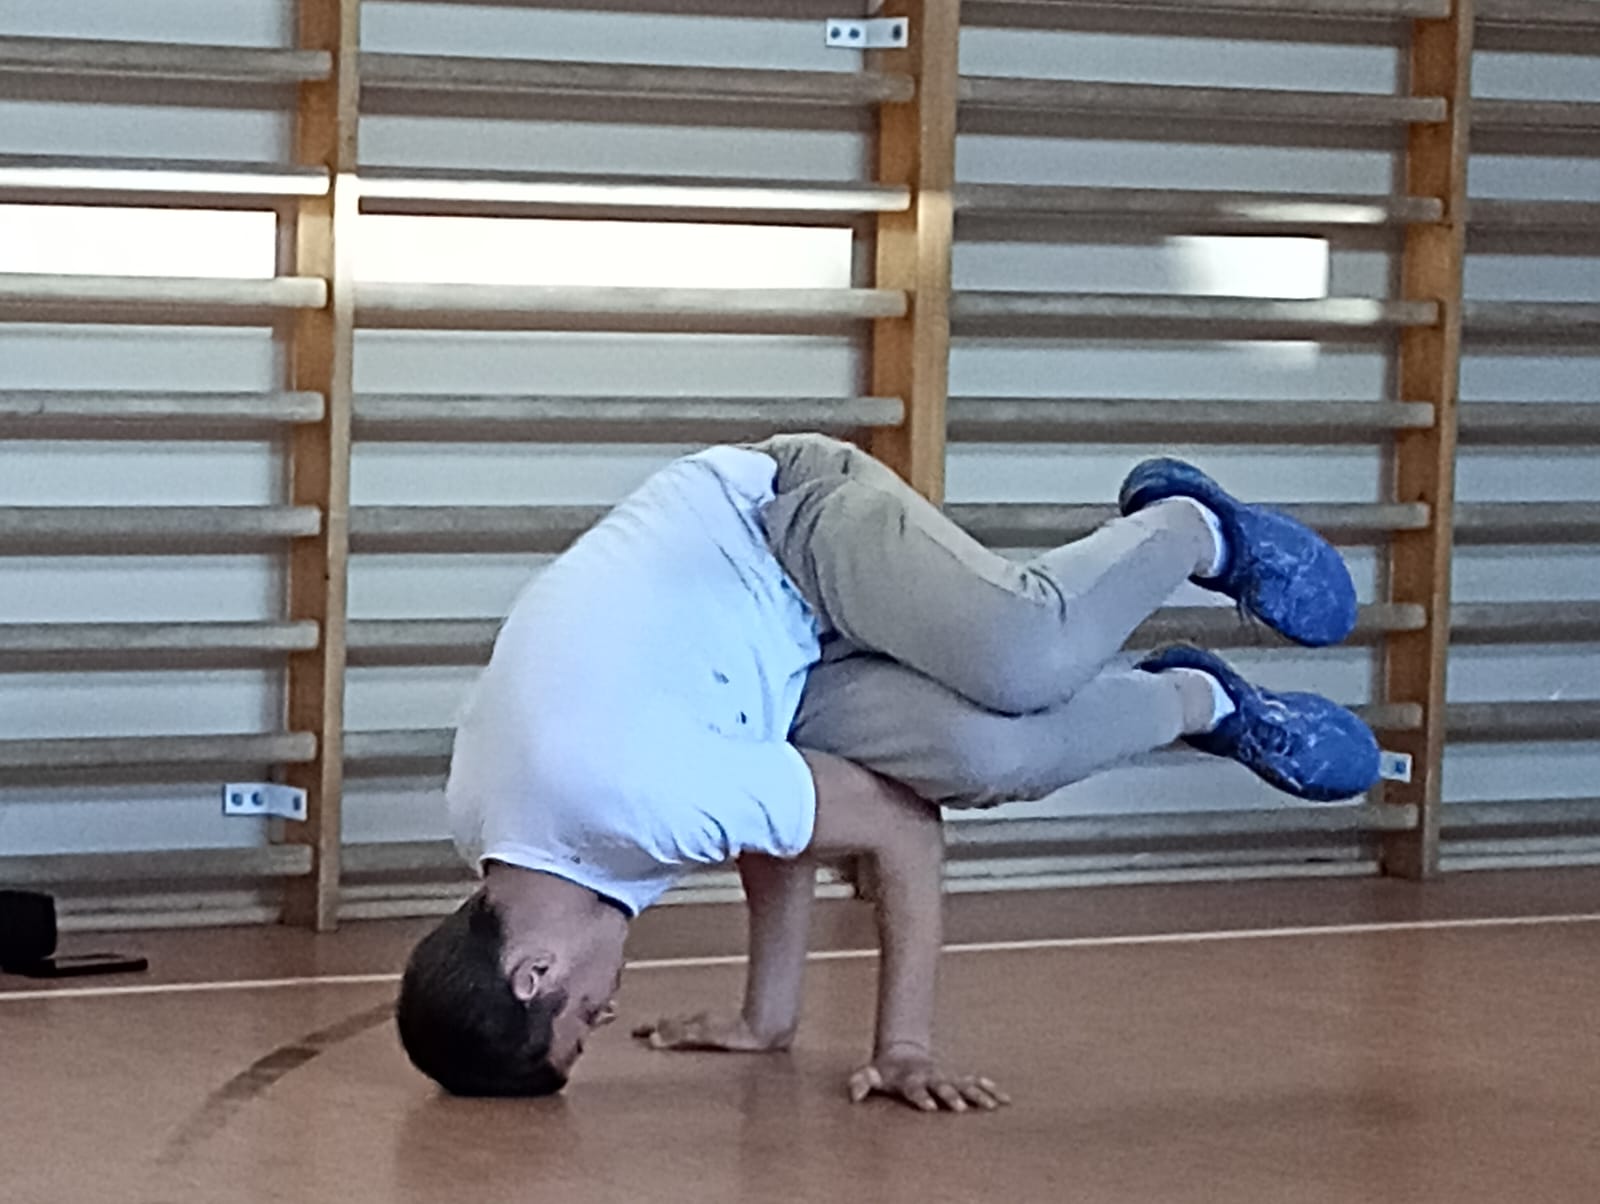 Zajęcia z programu "Fajna ferajna" | Trener tańca pokazując figurę opiera się o podłogę dłońmi i głową, reszta ciała w powietrzu. W tle drabiki sali gimnastycznej..jpg